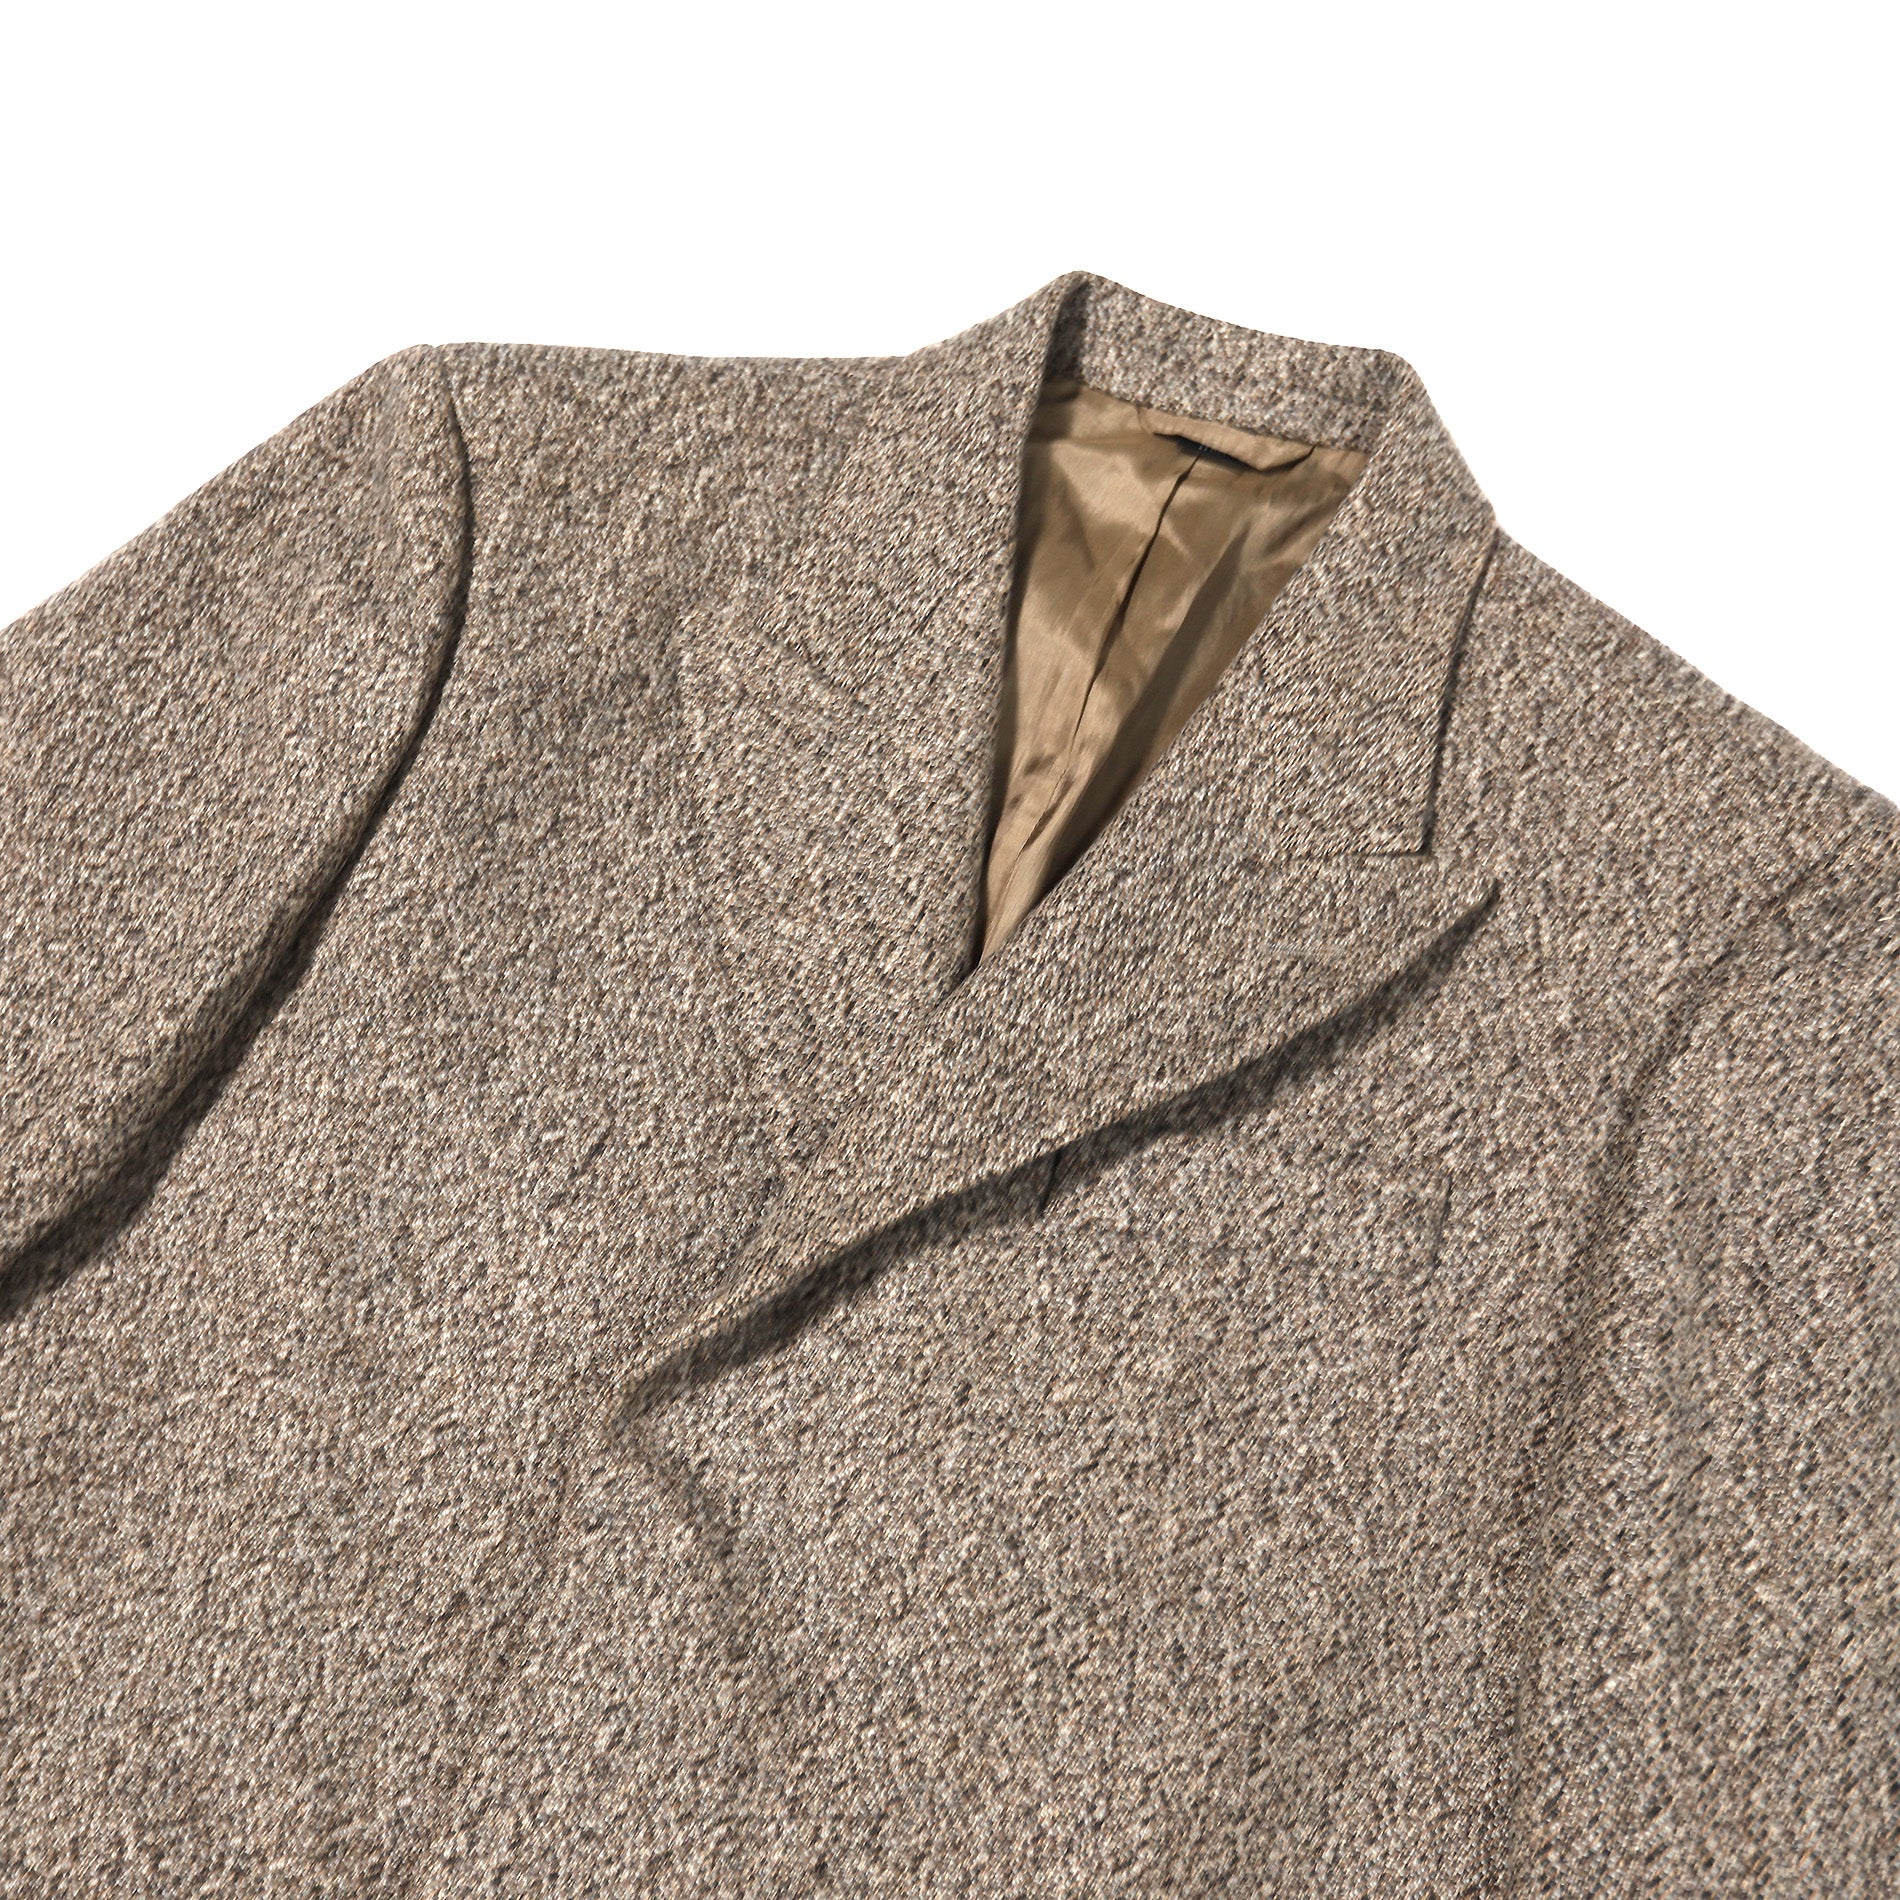 Helmut Lang Early 2000s Brown Wool Coat